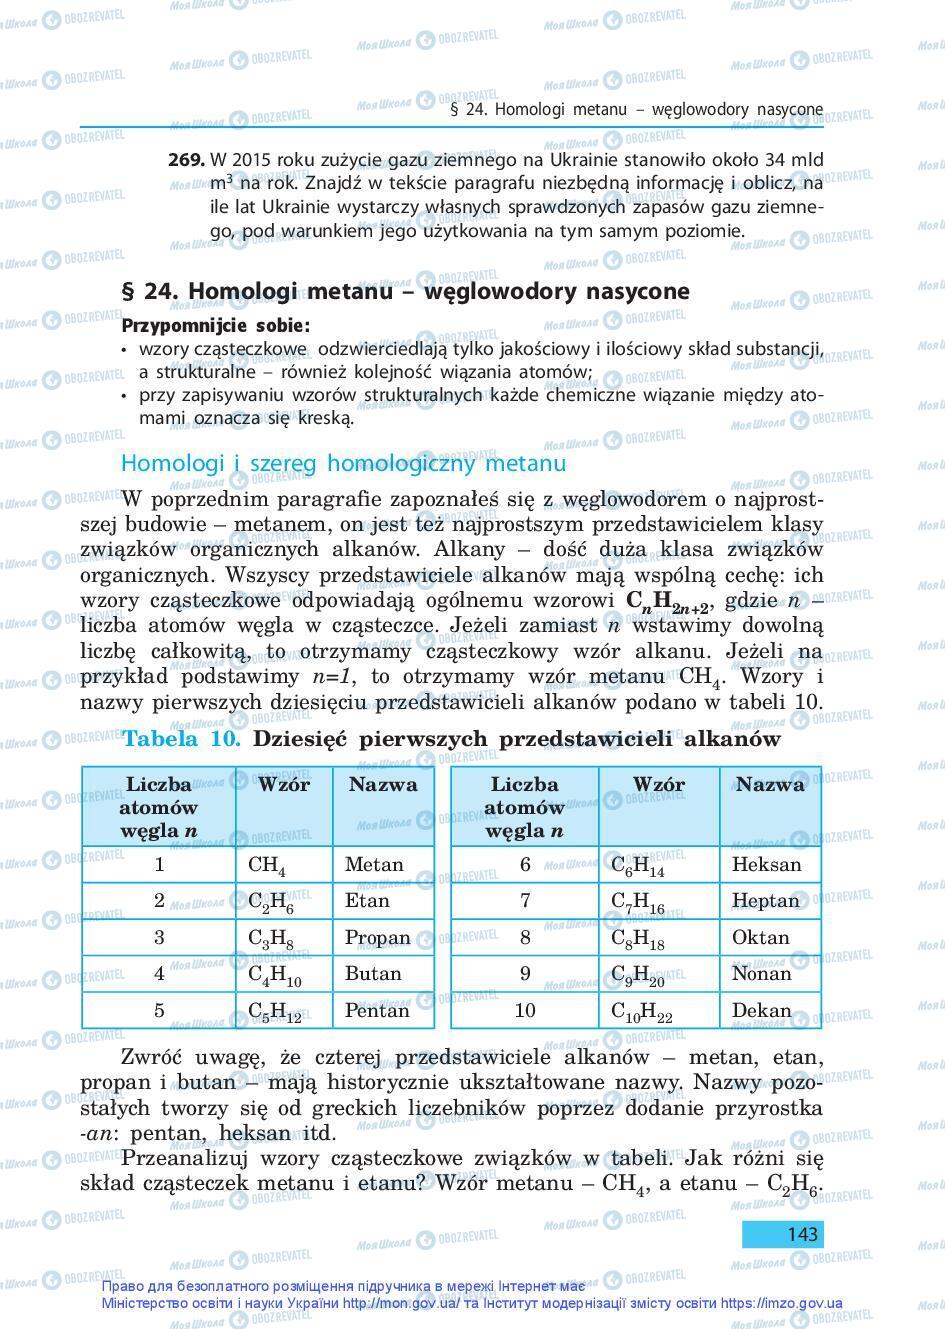 Підручники Хімія 9 клас сторінка 143